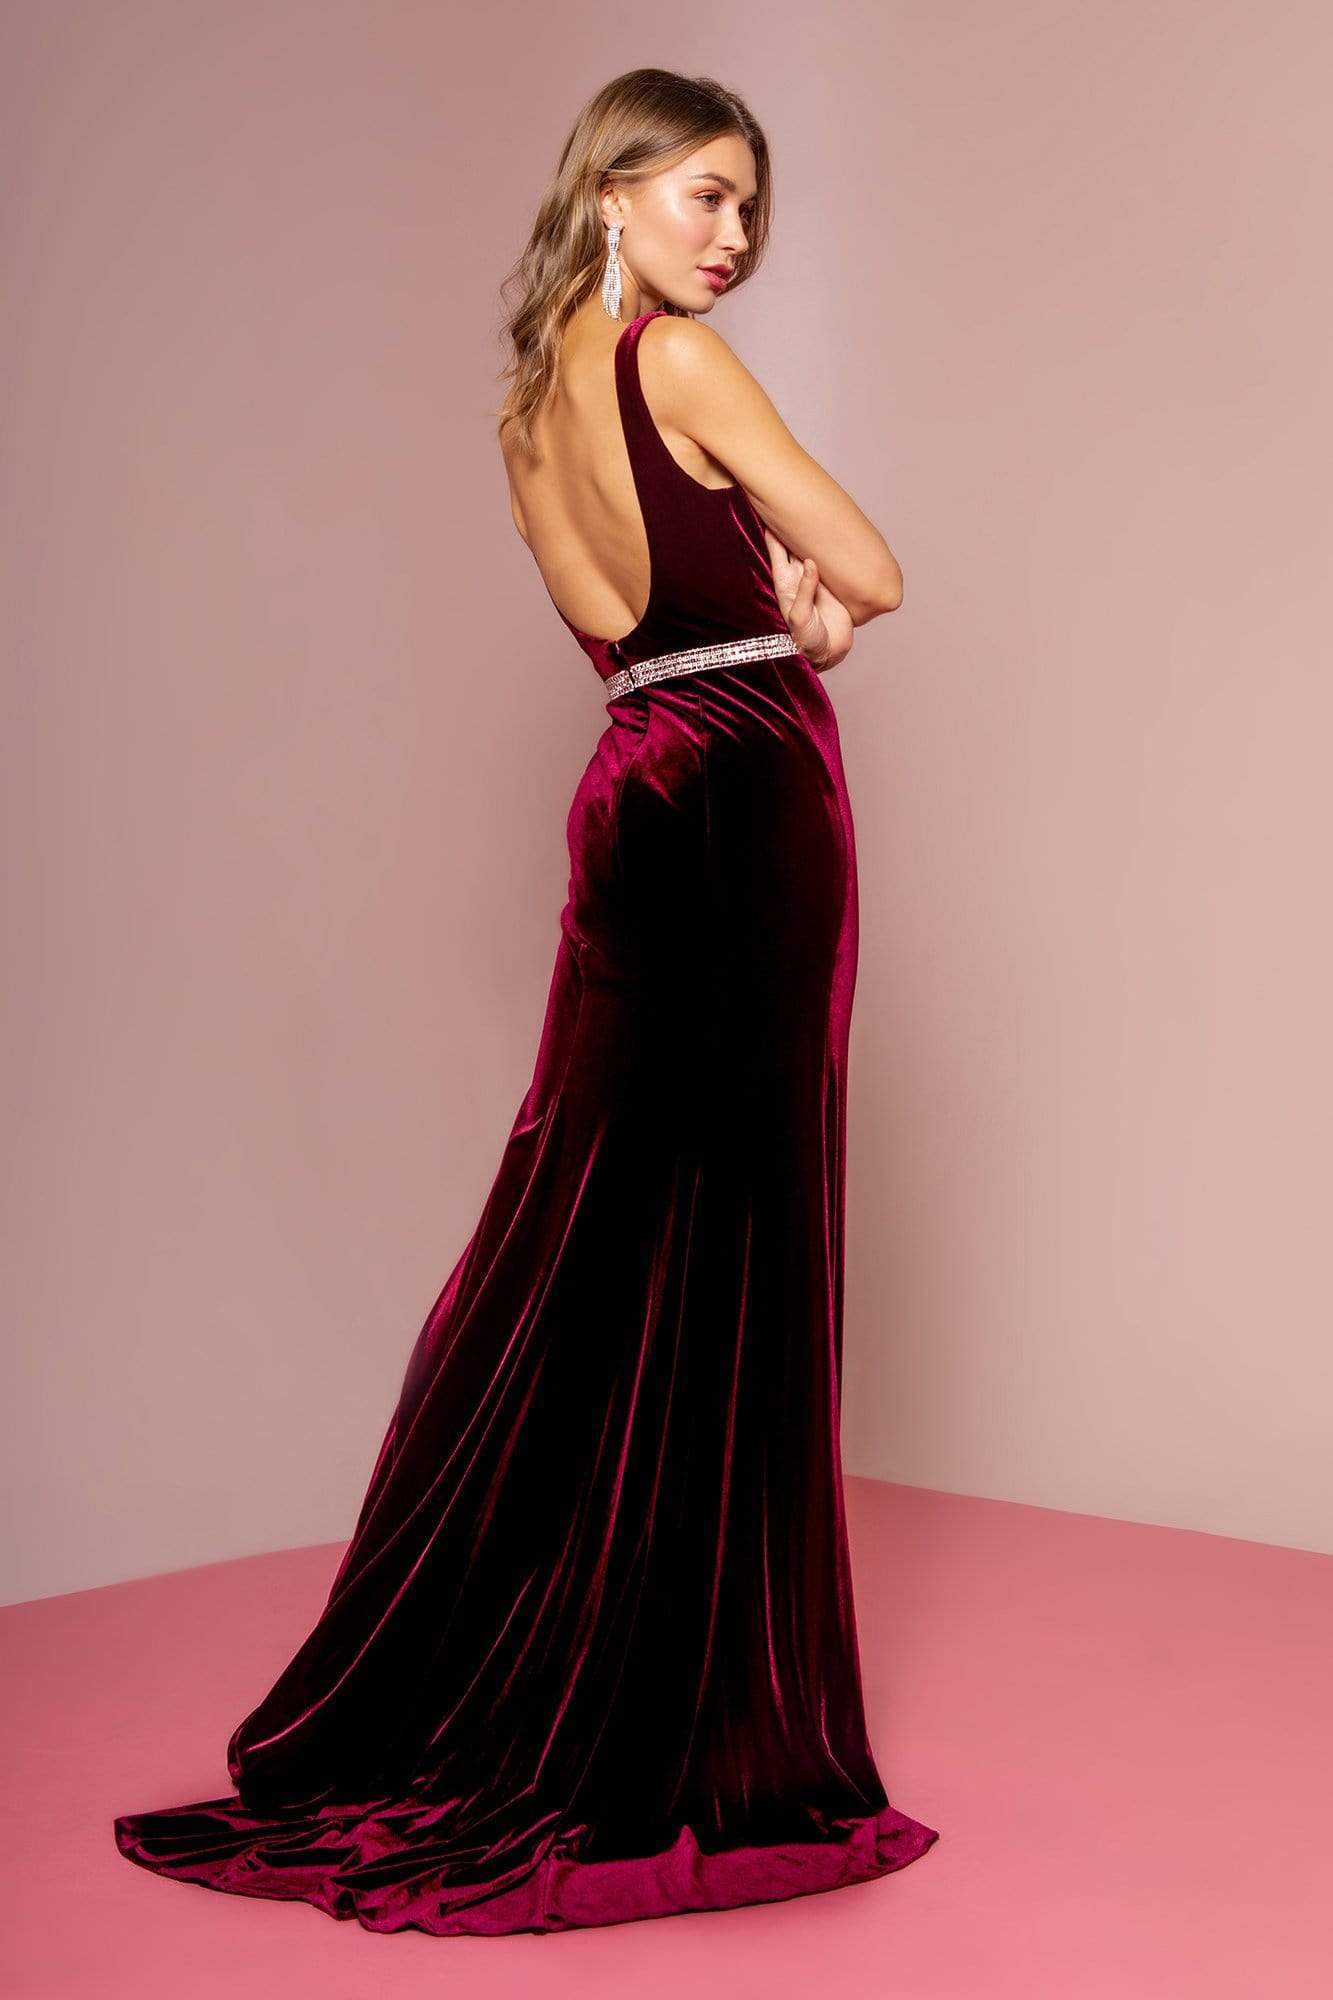 Elegant Velvet Burgundy Long Party Dress, A-line Evening Gown | Burgundy  prom dress, Evening gowns, Party dress long